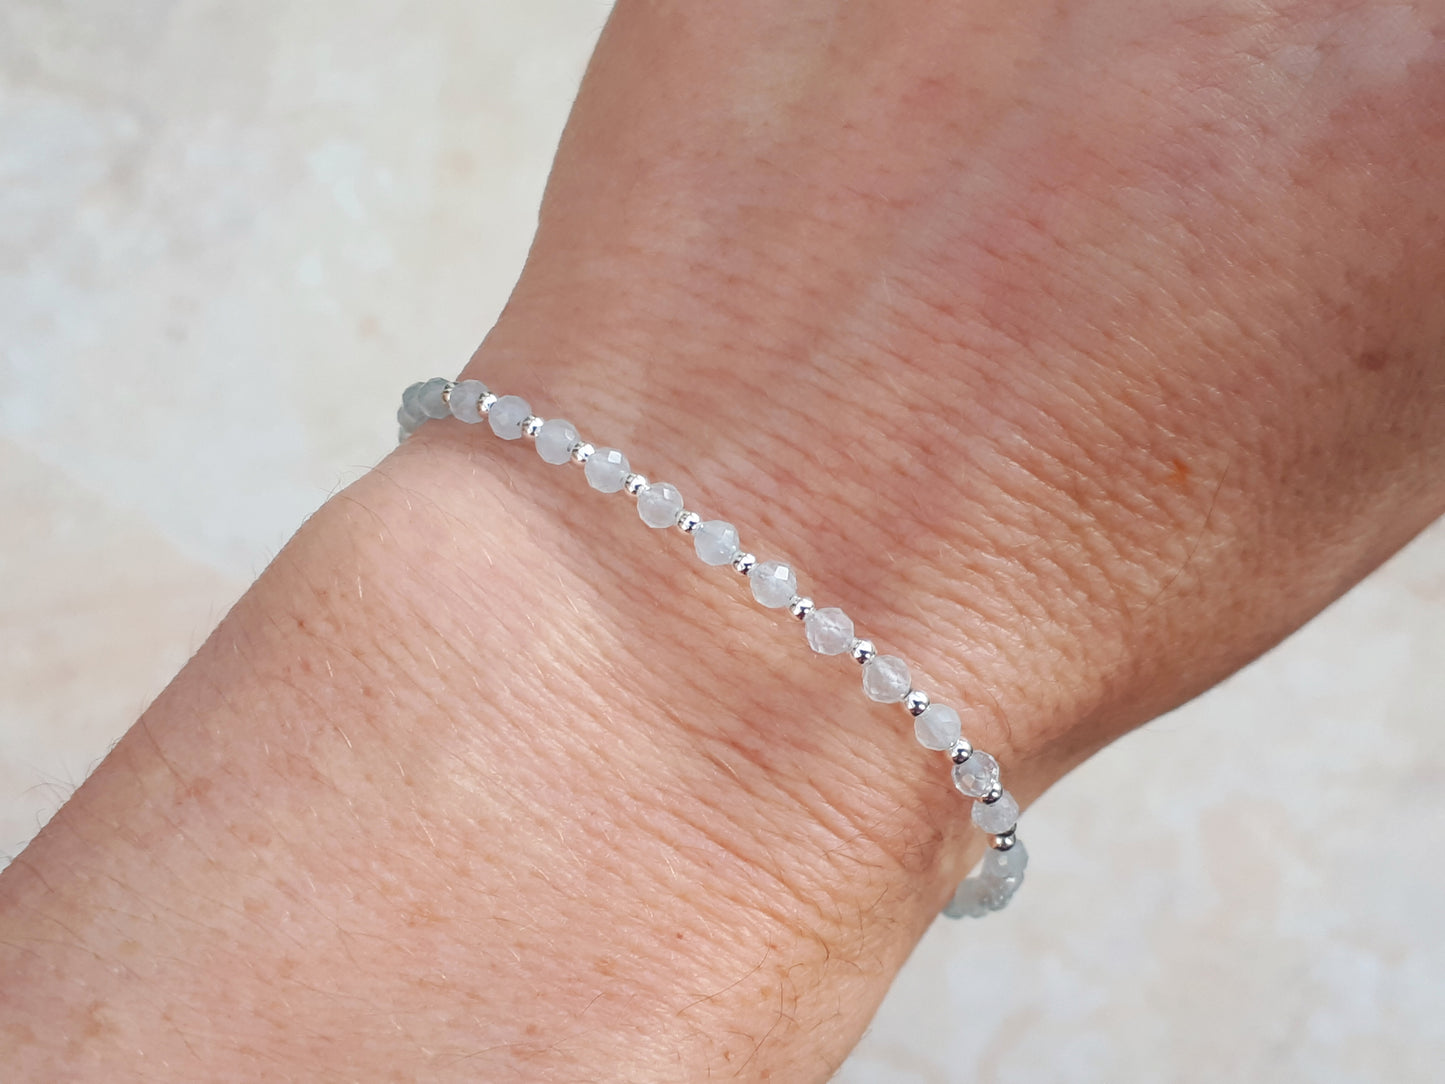 March birthstone bracelet in silver.